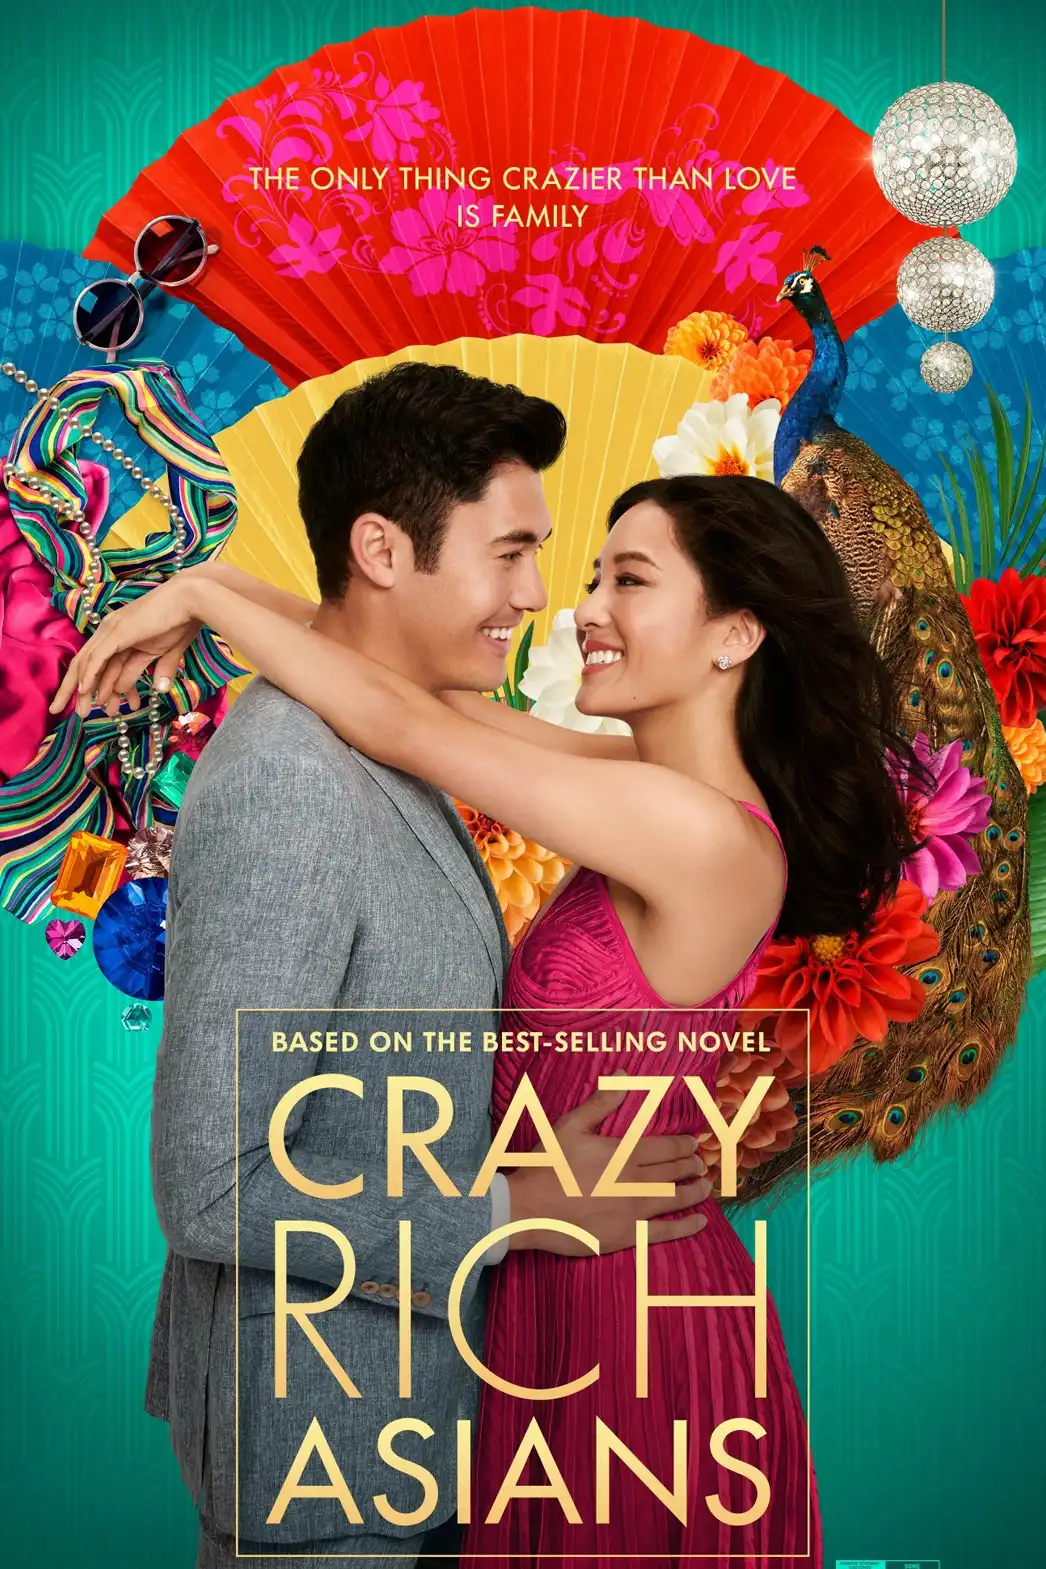 Crazy Rich Asians Soundtrack (2018)